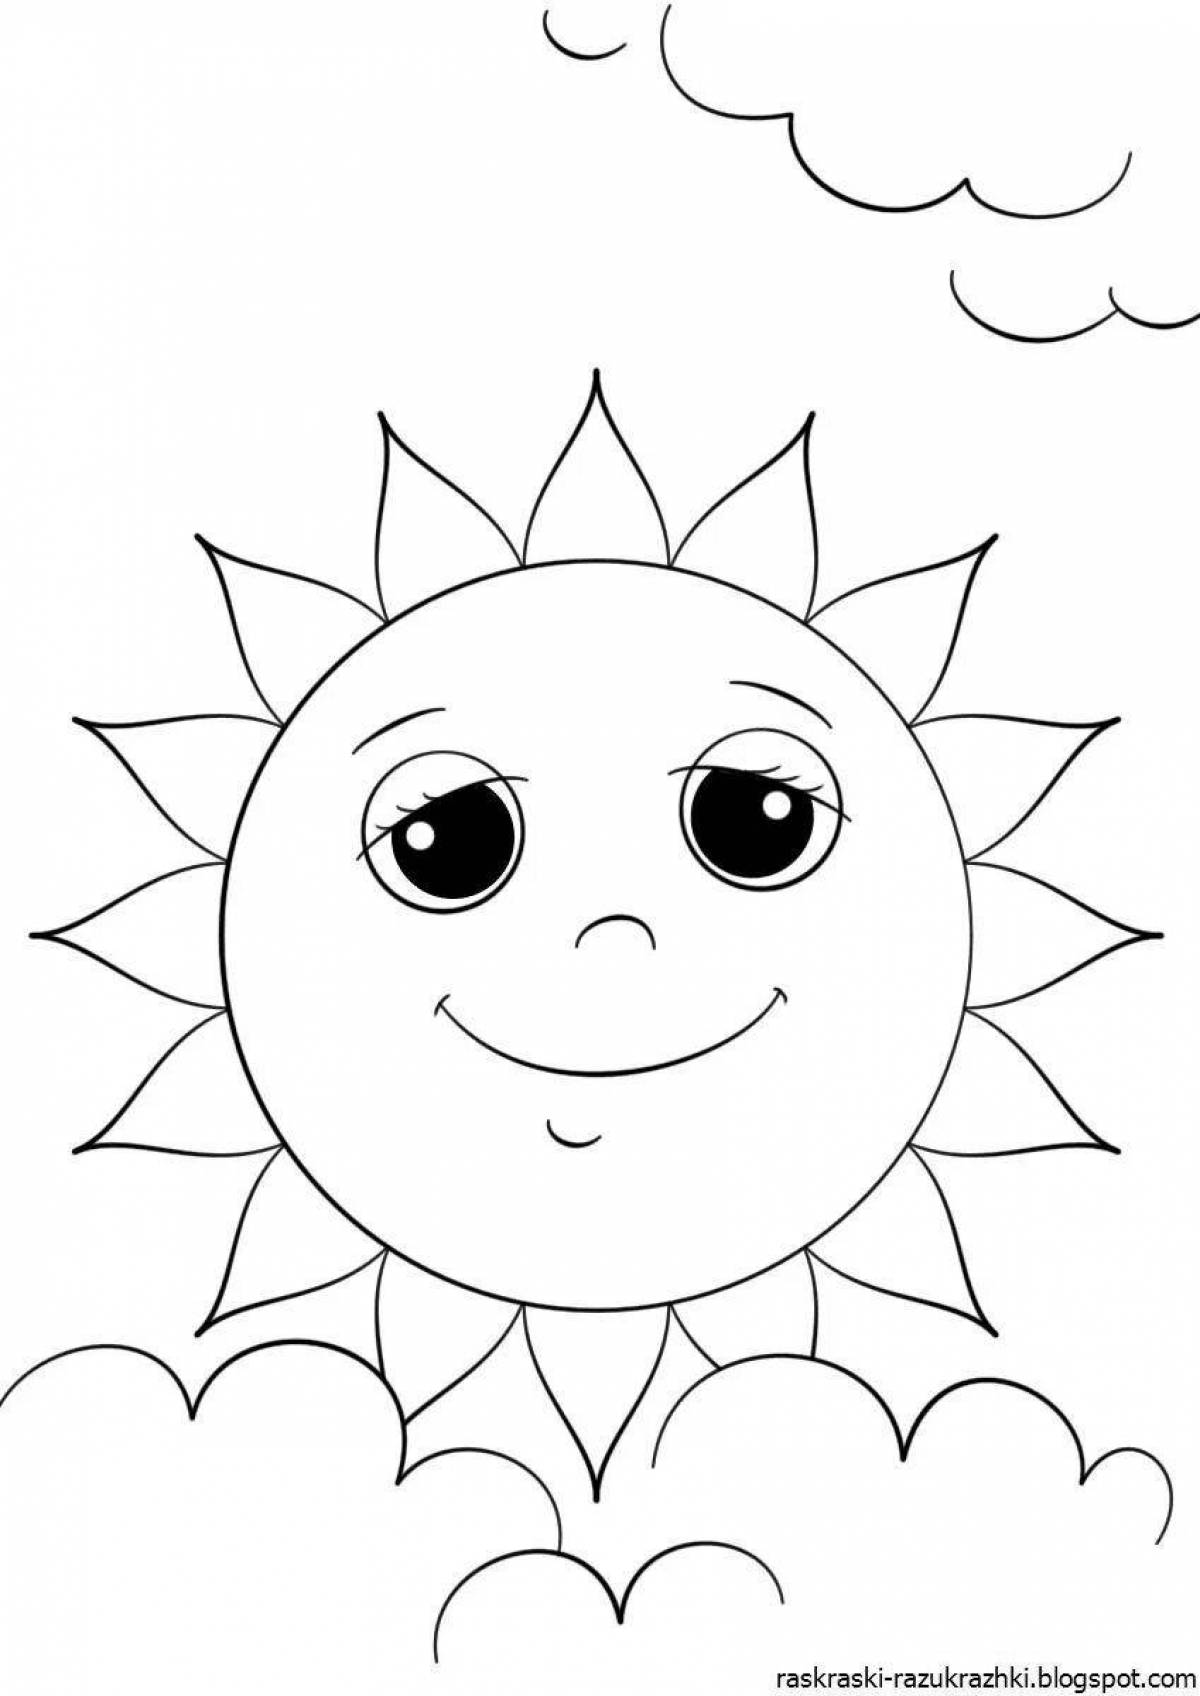 Великолепная раскраска солнце для детей 3-4 лет